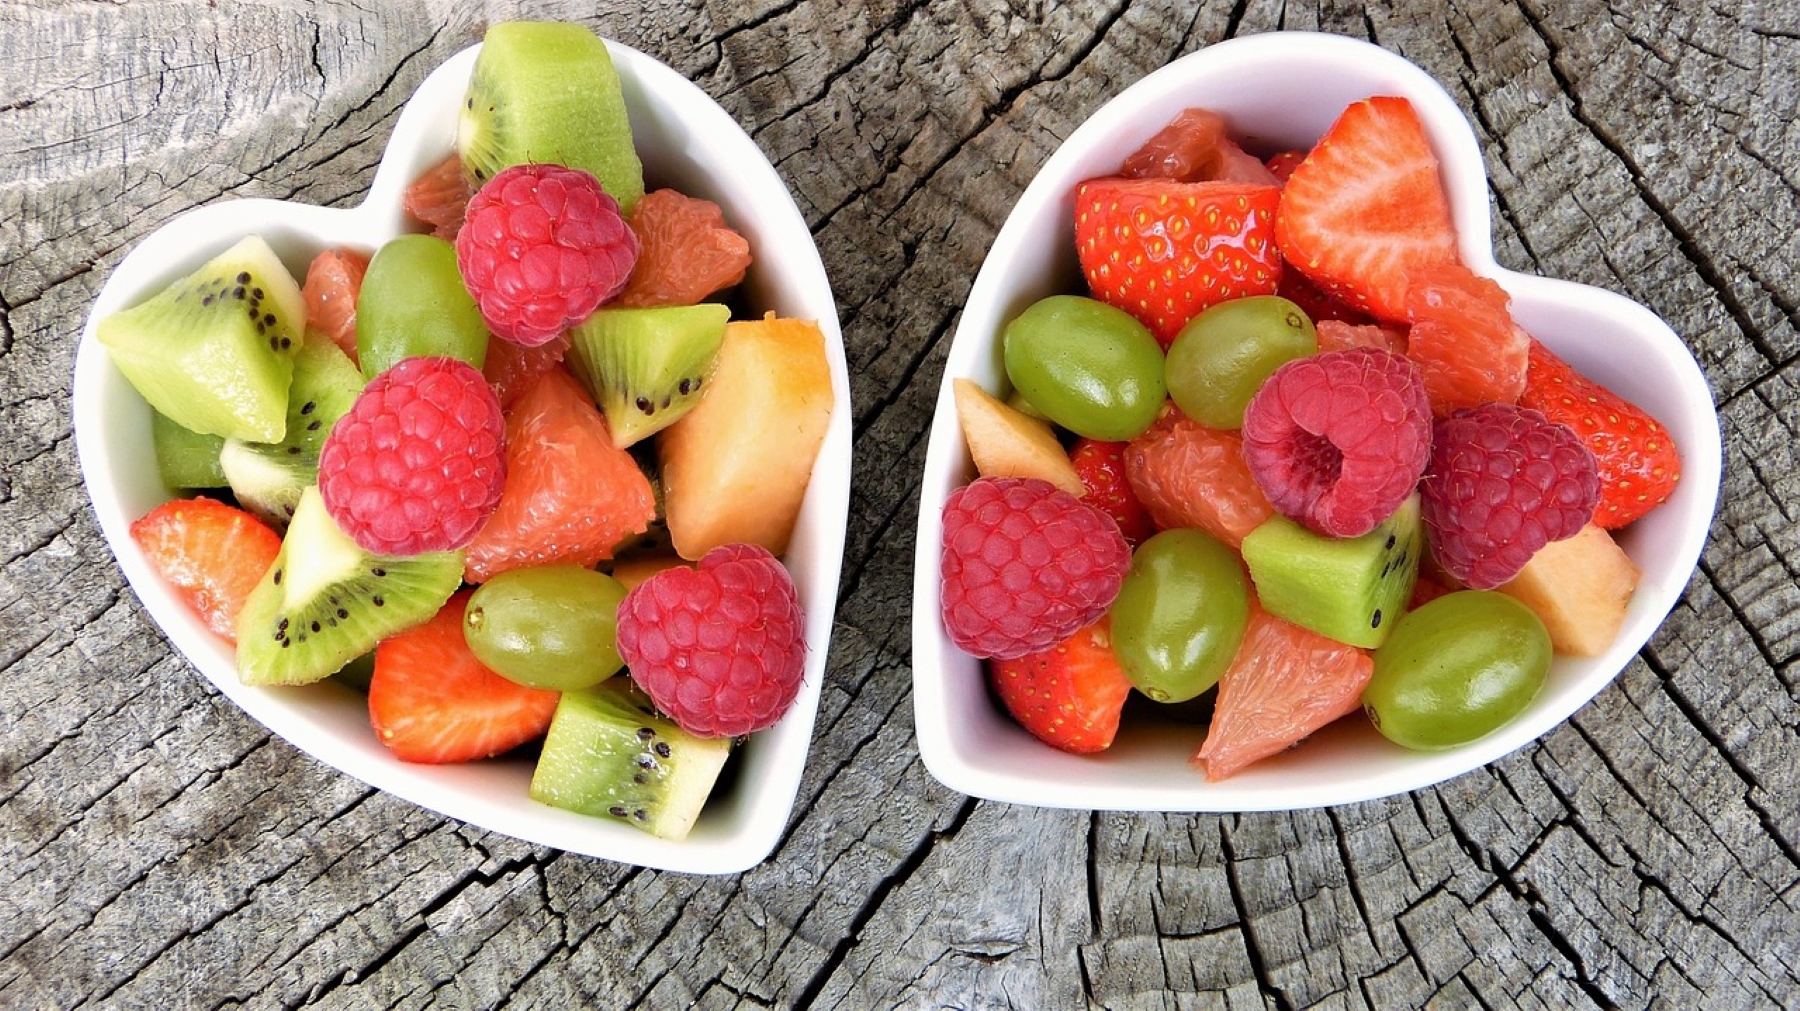 Φρούτα: Η ώρα που επιλέγετε να φάτε τα φρούτα επηρεάζει την απορρόφηση των θρεπτικών τους συστατικών;